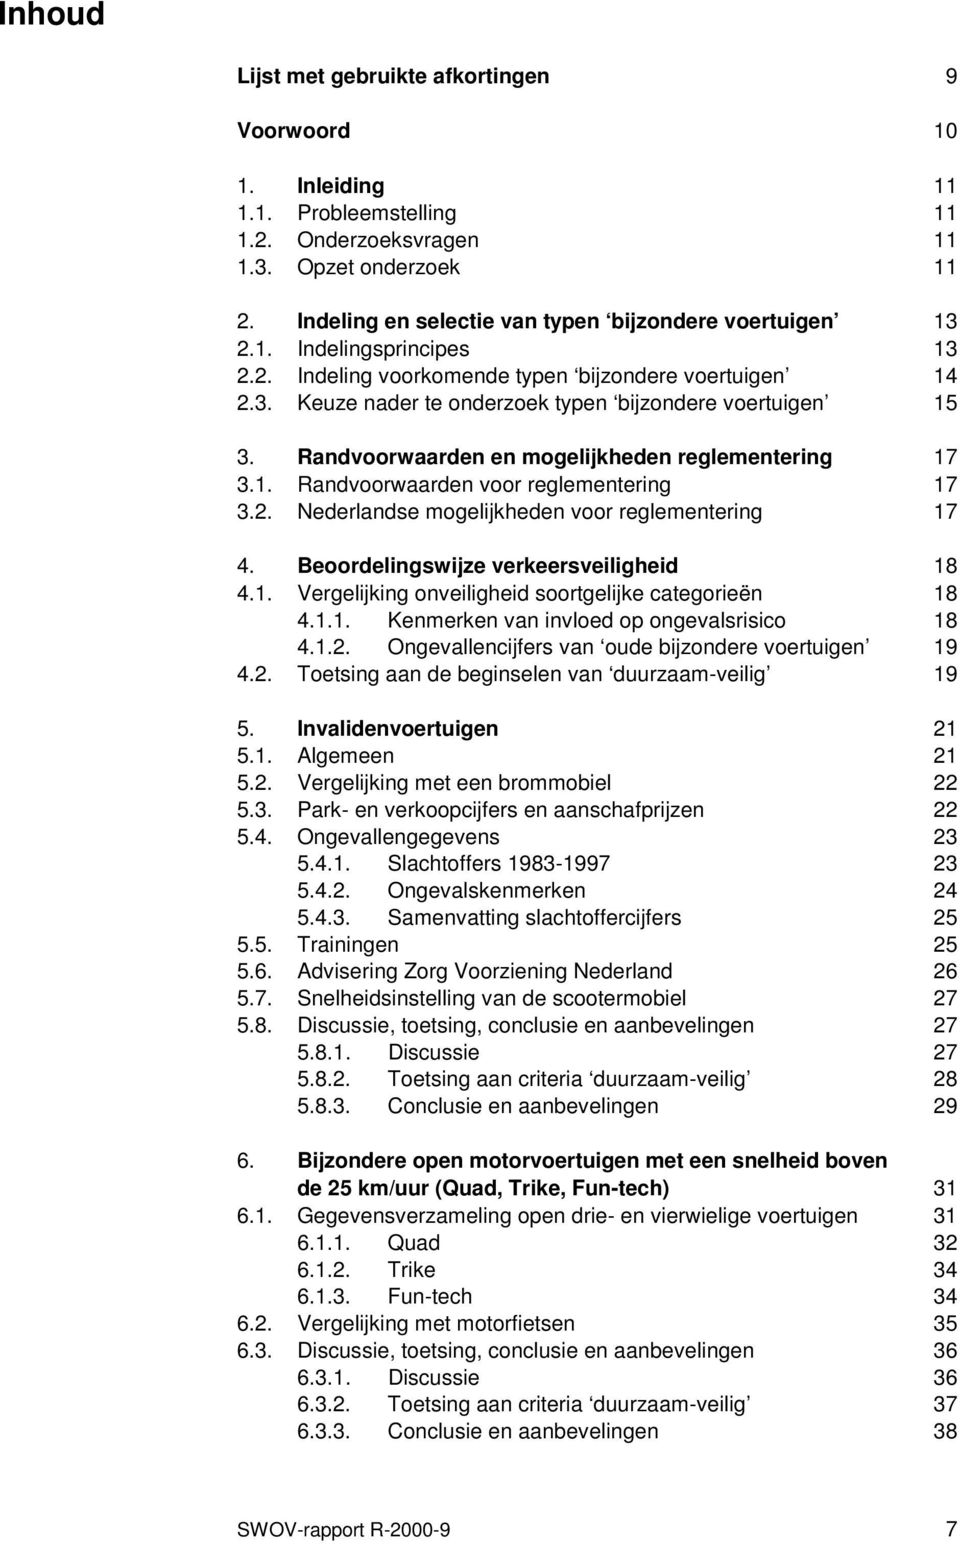 Randvoorwaarden en mogelijkheden reglementering 17 3.1. Randvoorwaarden voor reglementering 17 3.2. Nederlandse mogelijkheden voor reglementering 17 4. Beoordelingswijze verkeersveiligheid 18 4.1. Vergelijking onveiligheid soortgelijke categorieën 18 4.